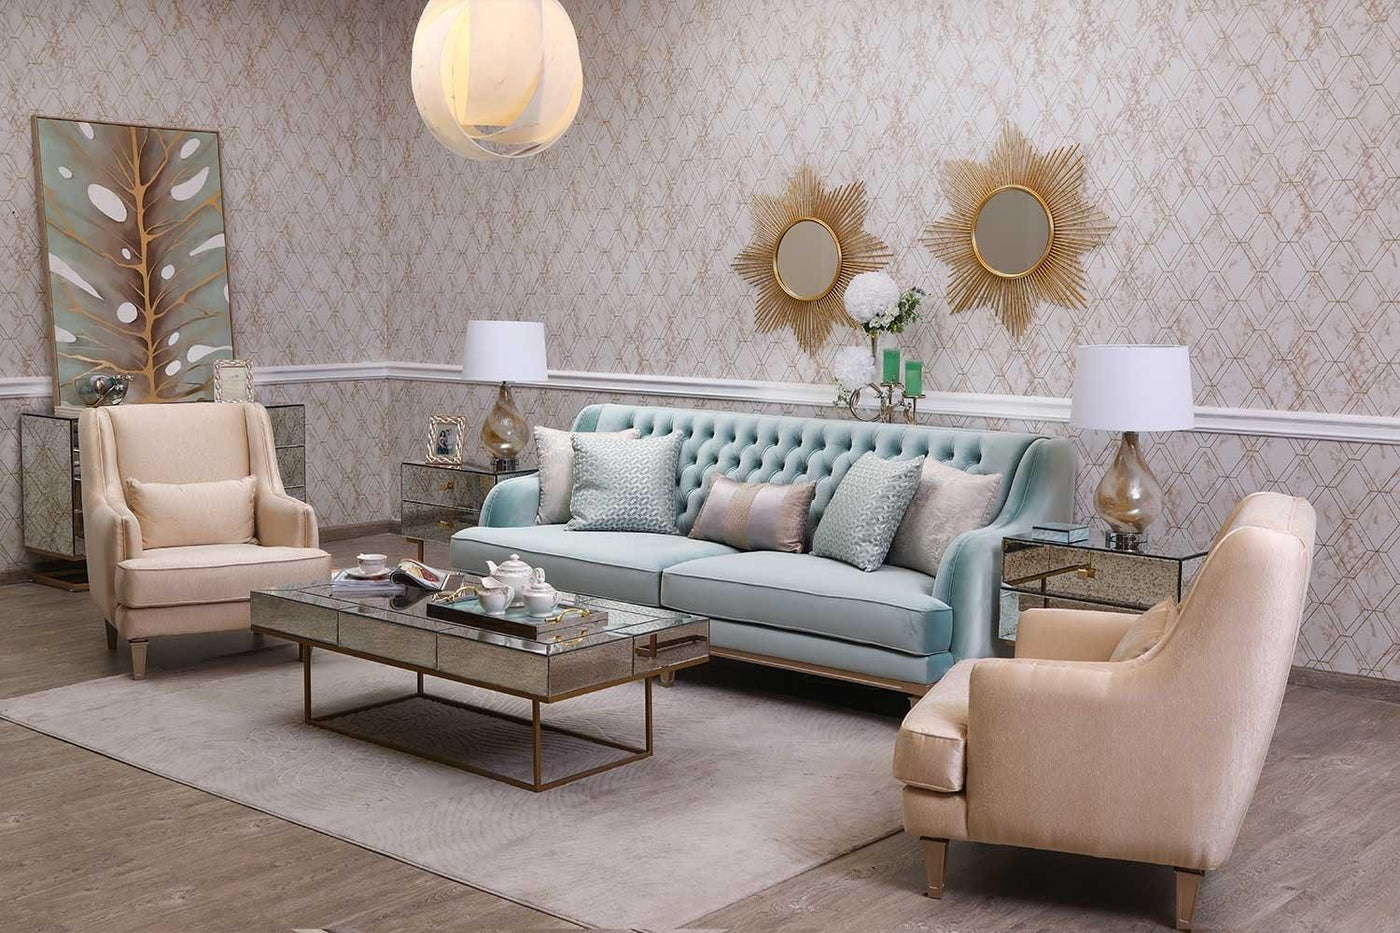 Caproni Living Room Set